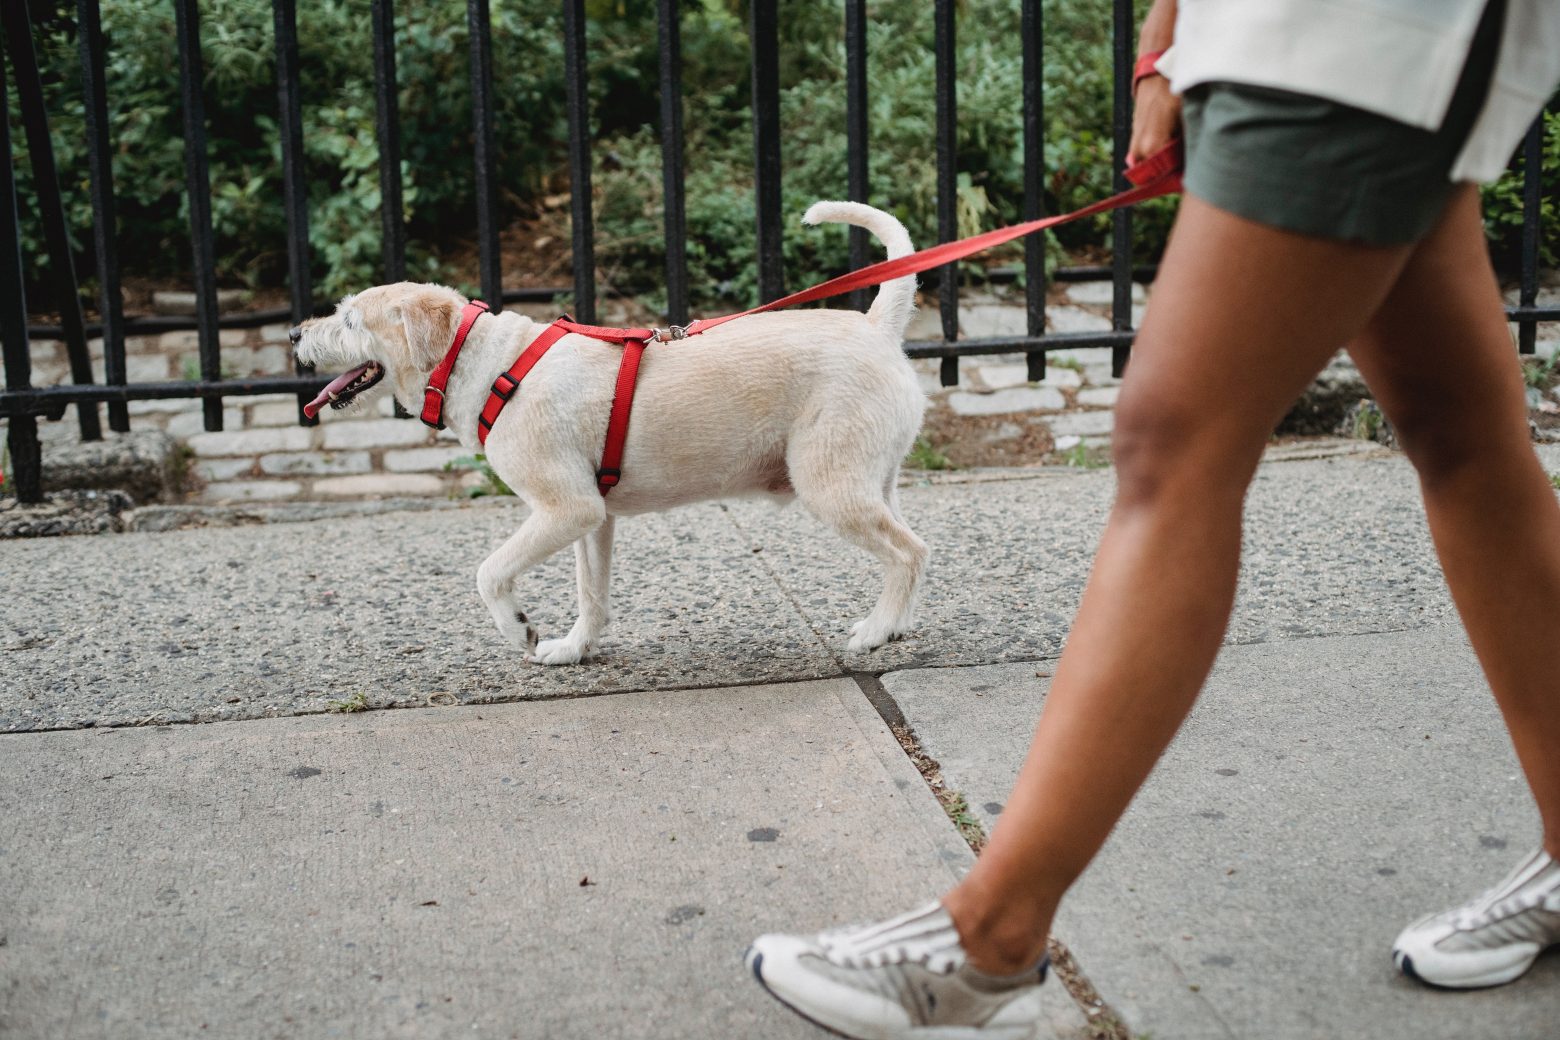 Παγκόσμια Ημέρα Σκύλου – Τι να μην κάνεις όταν συναντιέσαι με άγνωστα σκυλάκια στο δρόμο